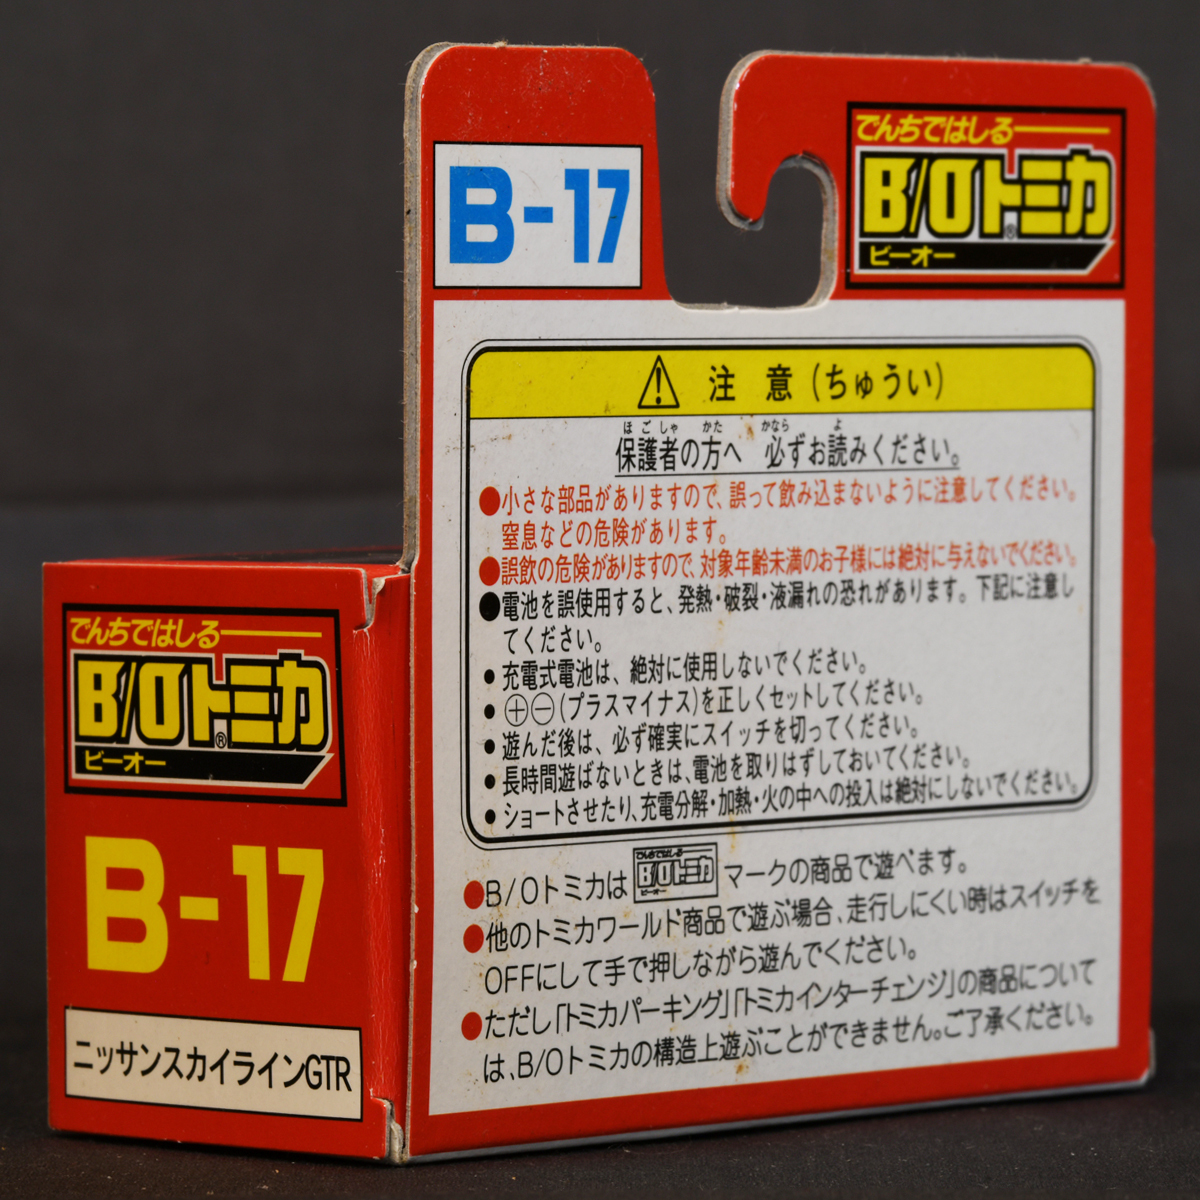 B/Oトミカ B-17 ニッサン スカイライン GTR_画像4